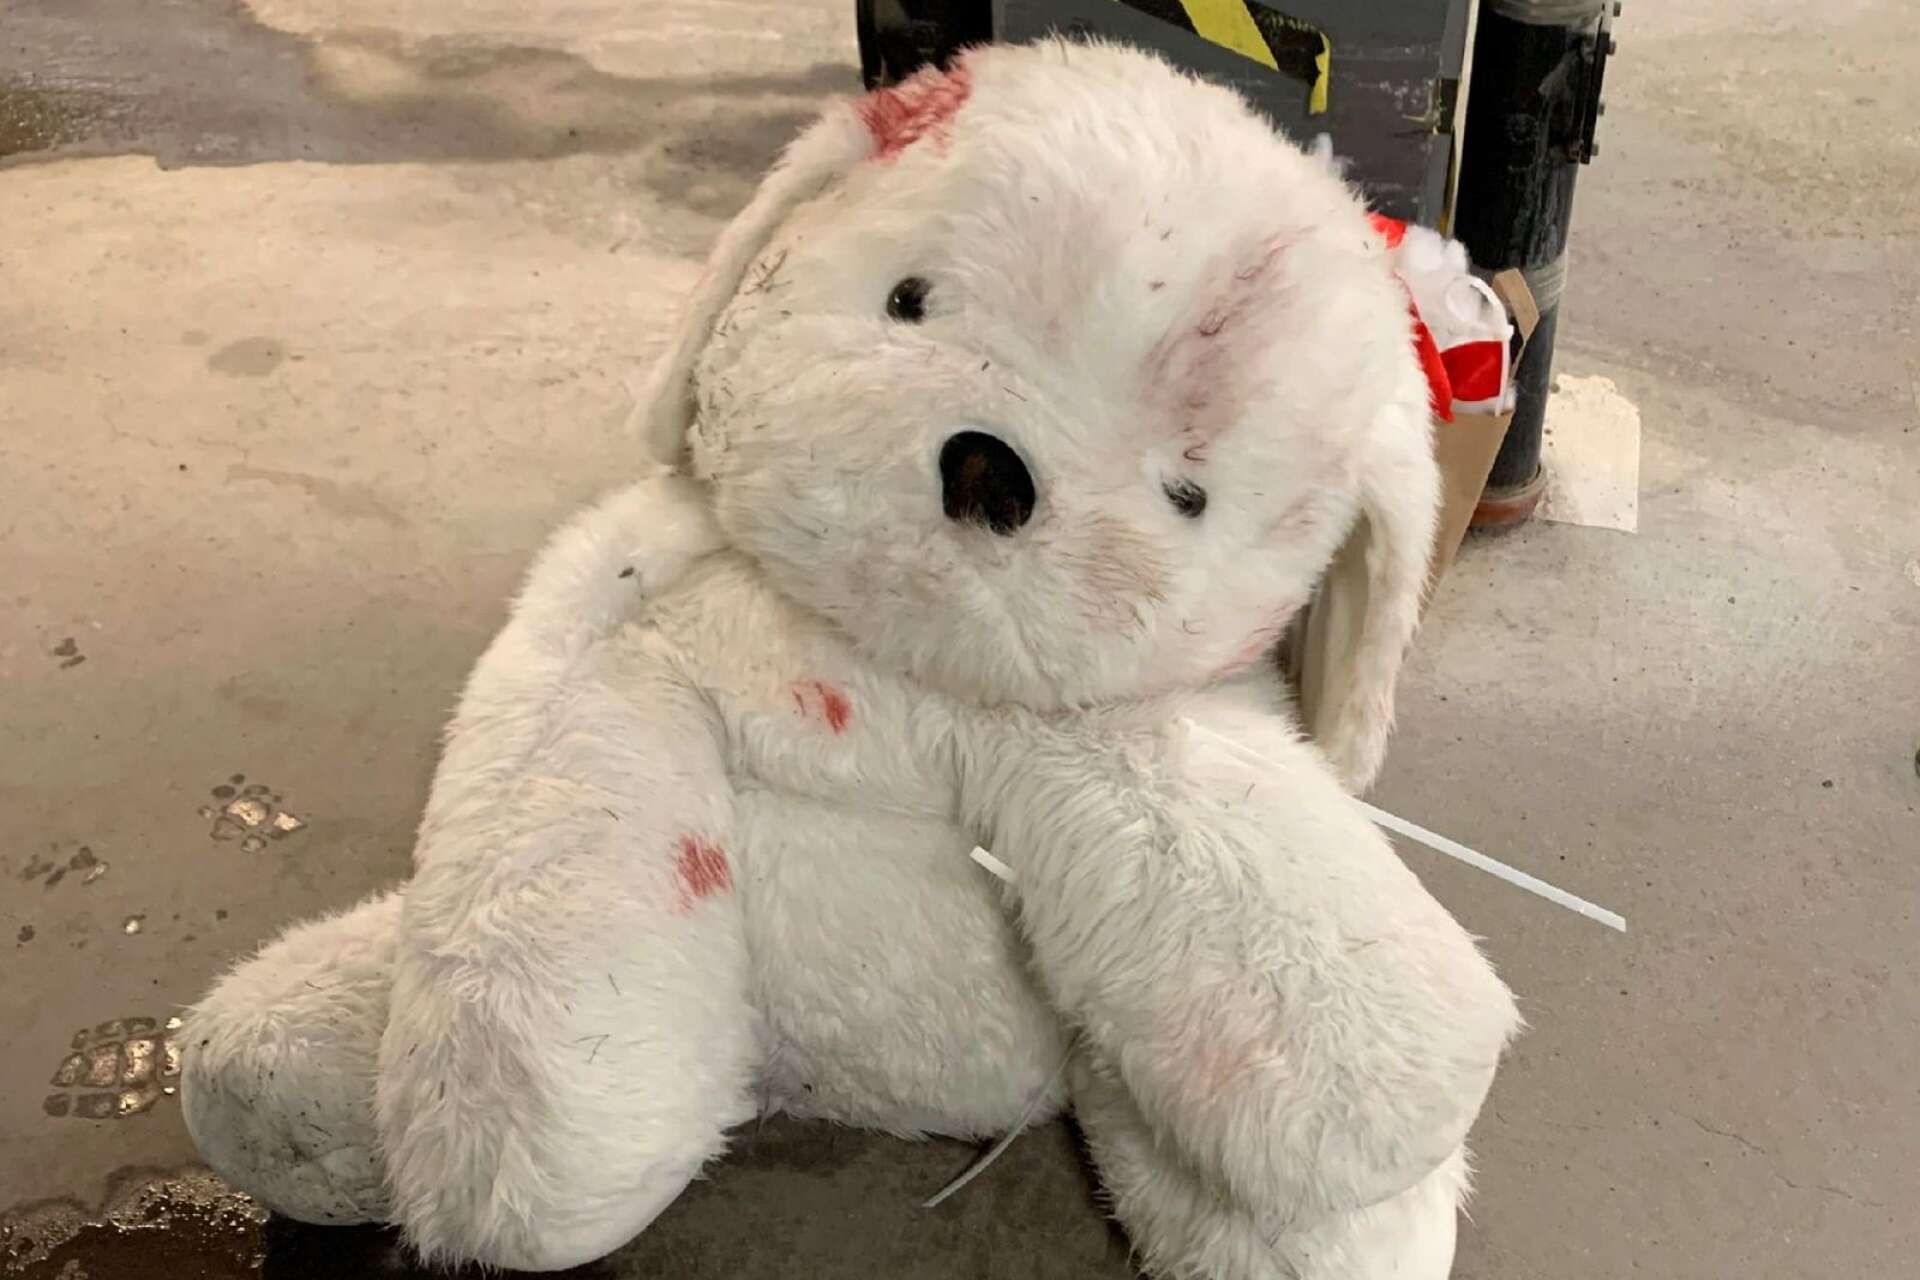 Mjukisdjuret omhändertogs av polisen efter det märkliga äventyret. Leksaken tillhör en ridskola och var värt närmare tusen kronor.